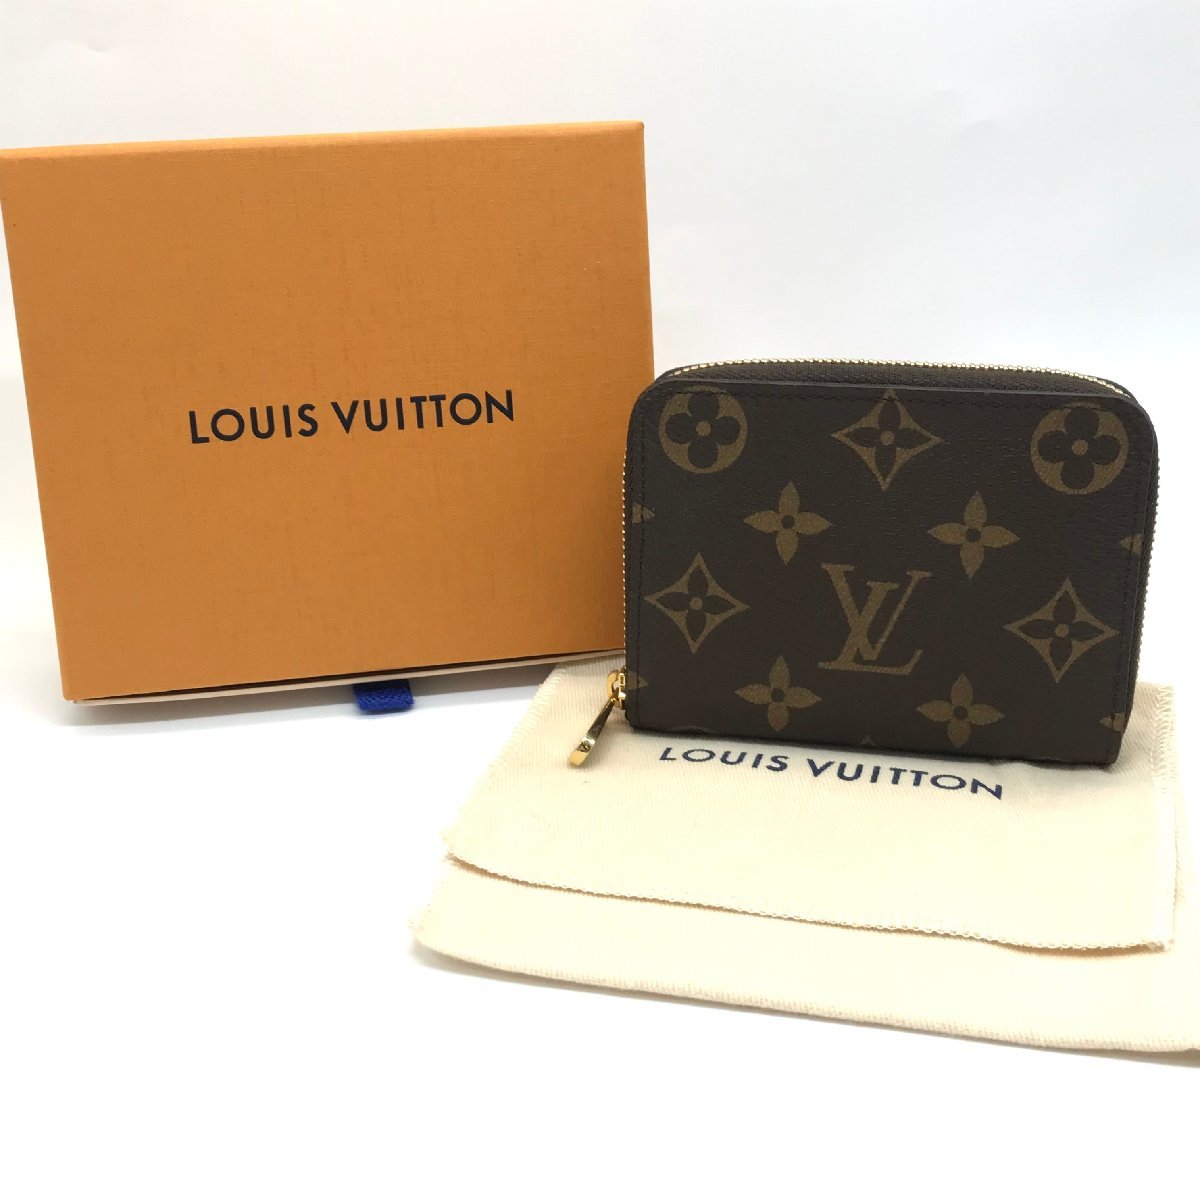 LOUIS VUITTON ルイヴィトン モノグラム コインパース カードケース 小銭入れ コインケース 超美品 M11218